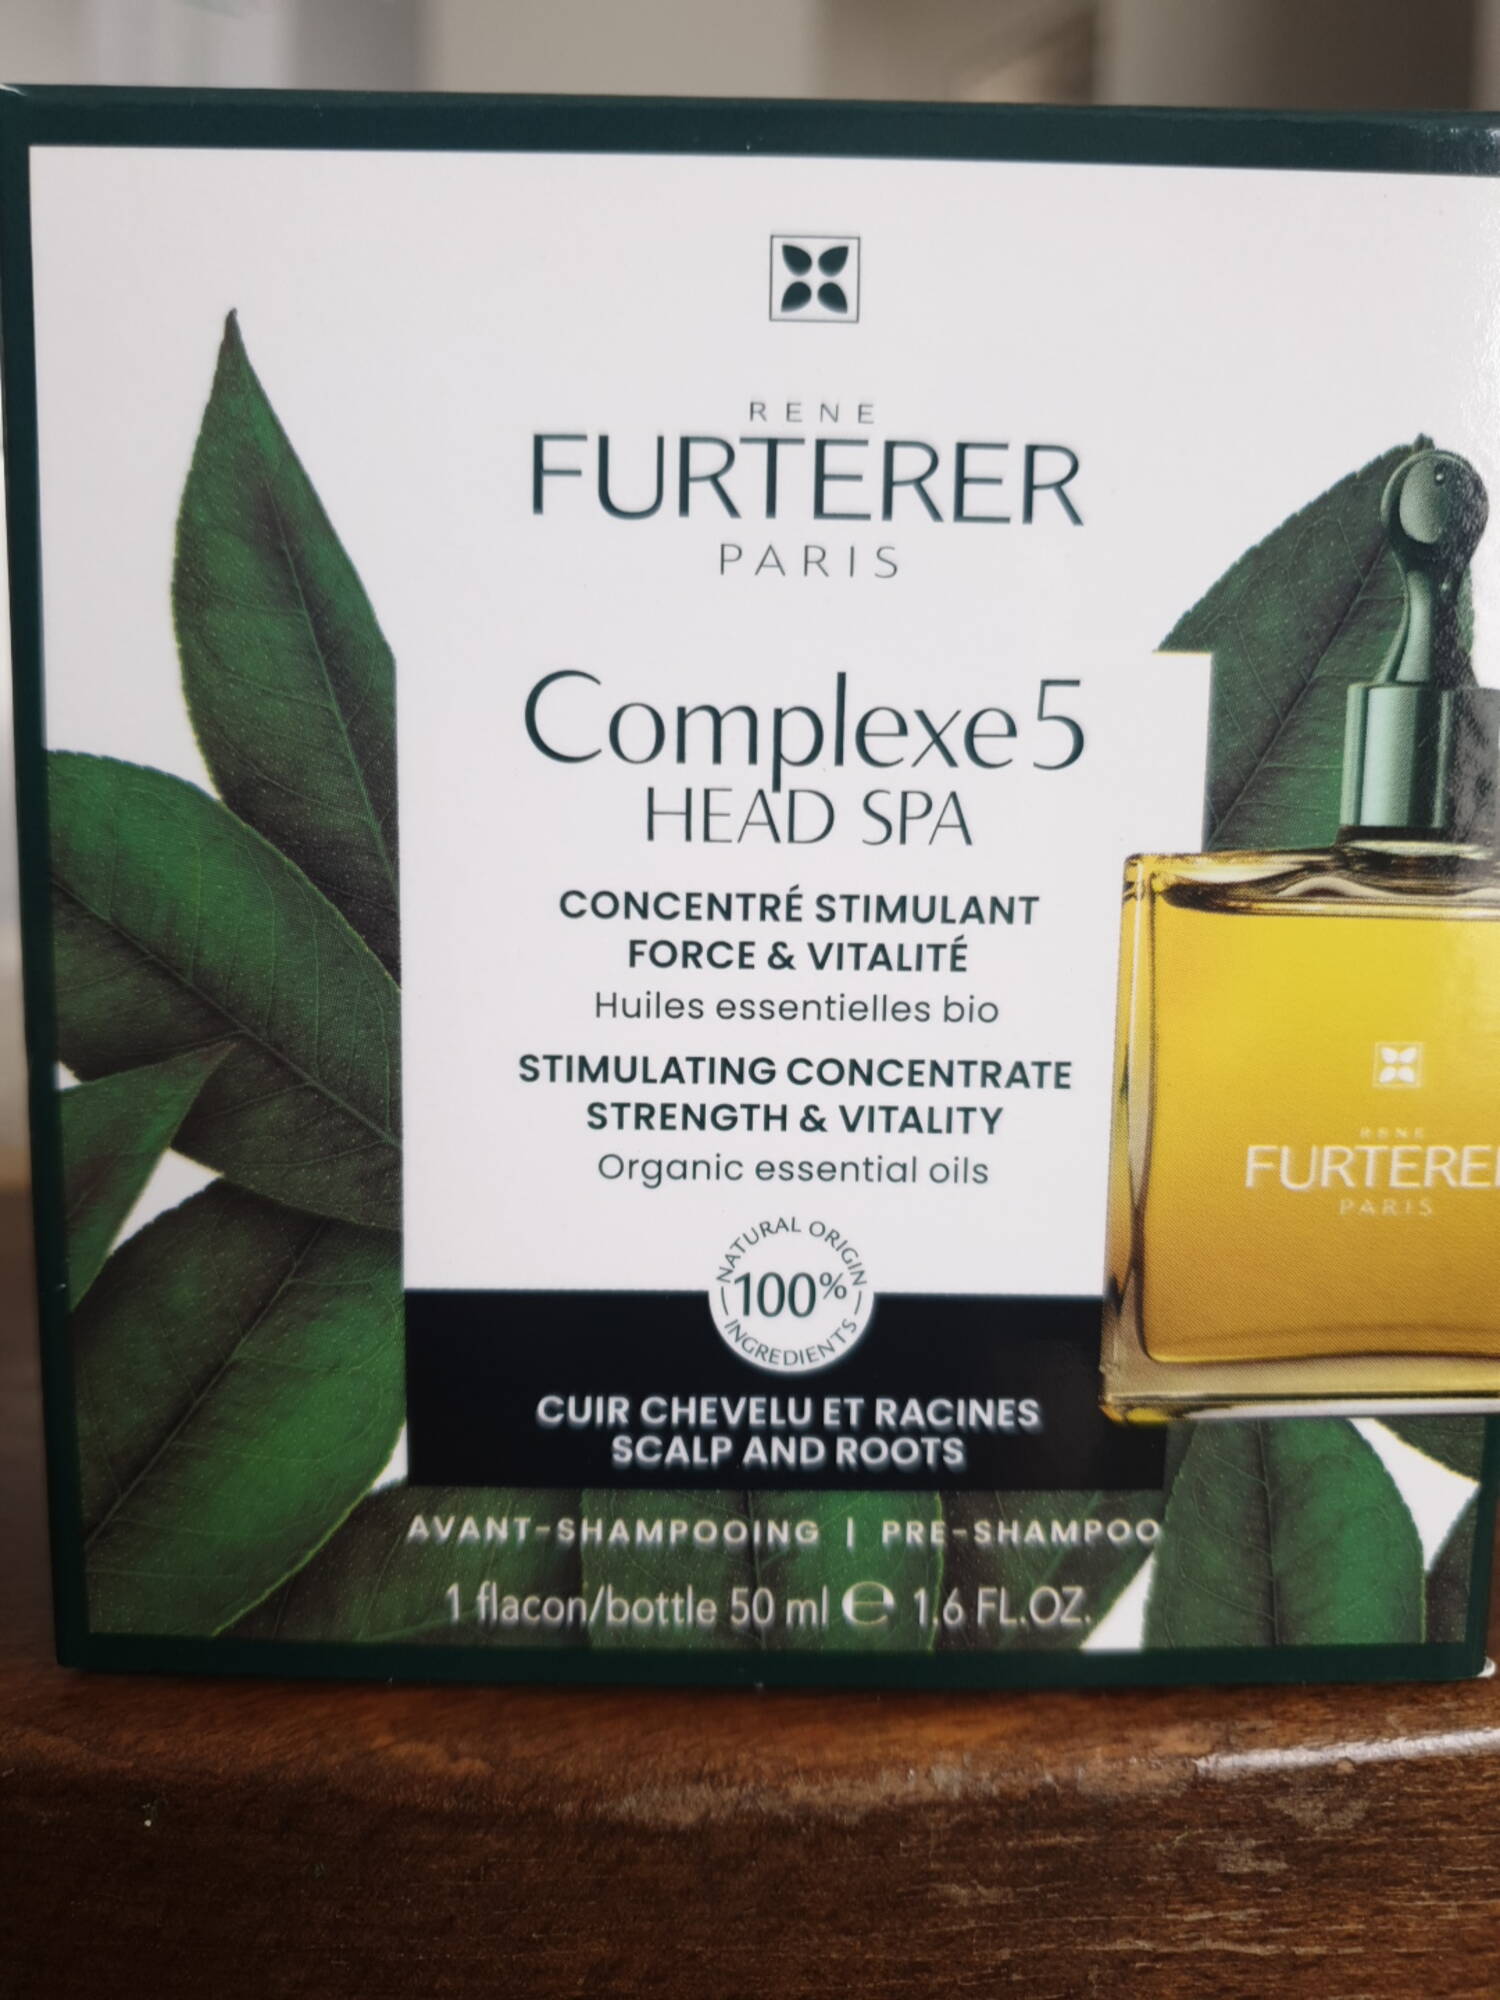 RENÉ FURTERER PARIS - Complexe 5 - Avant-shampooing concentré stimulant